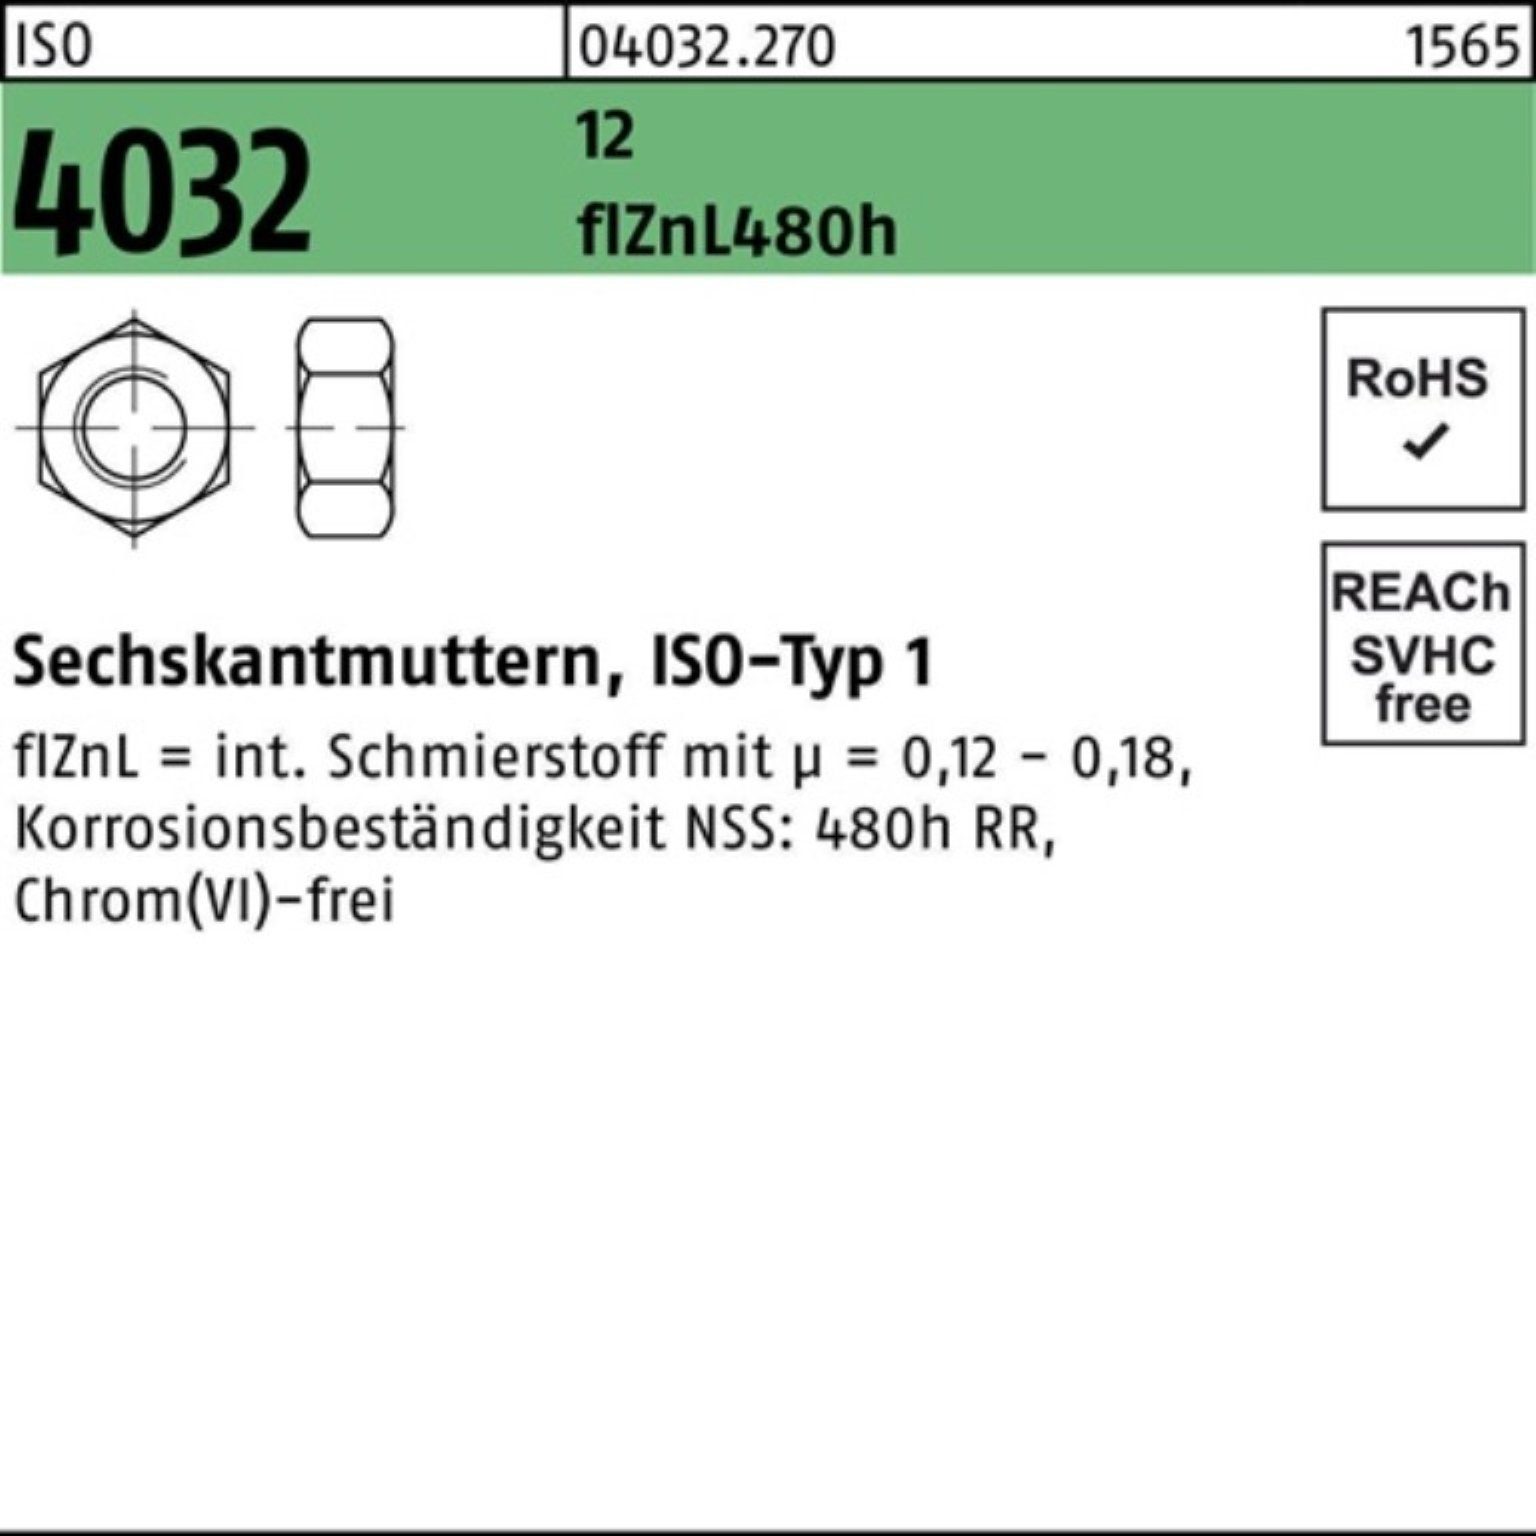 Bufab Muttern 100er Pack Sechskantmutter ISO 4032 M10 12 flZnL 480h zinklamellenb. 1